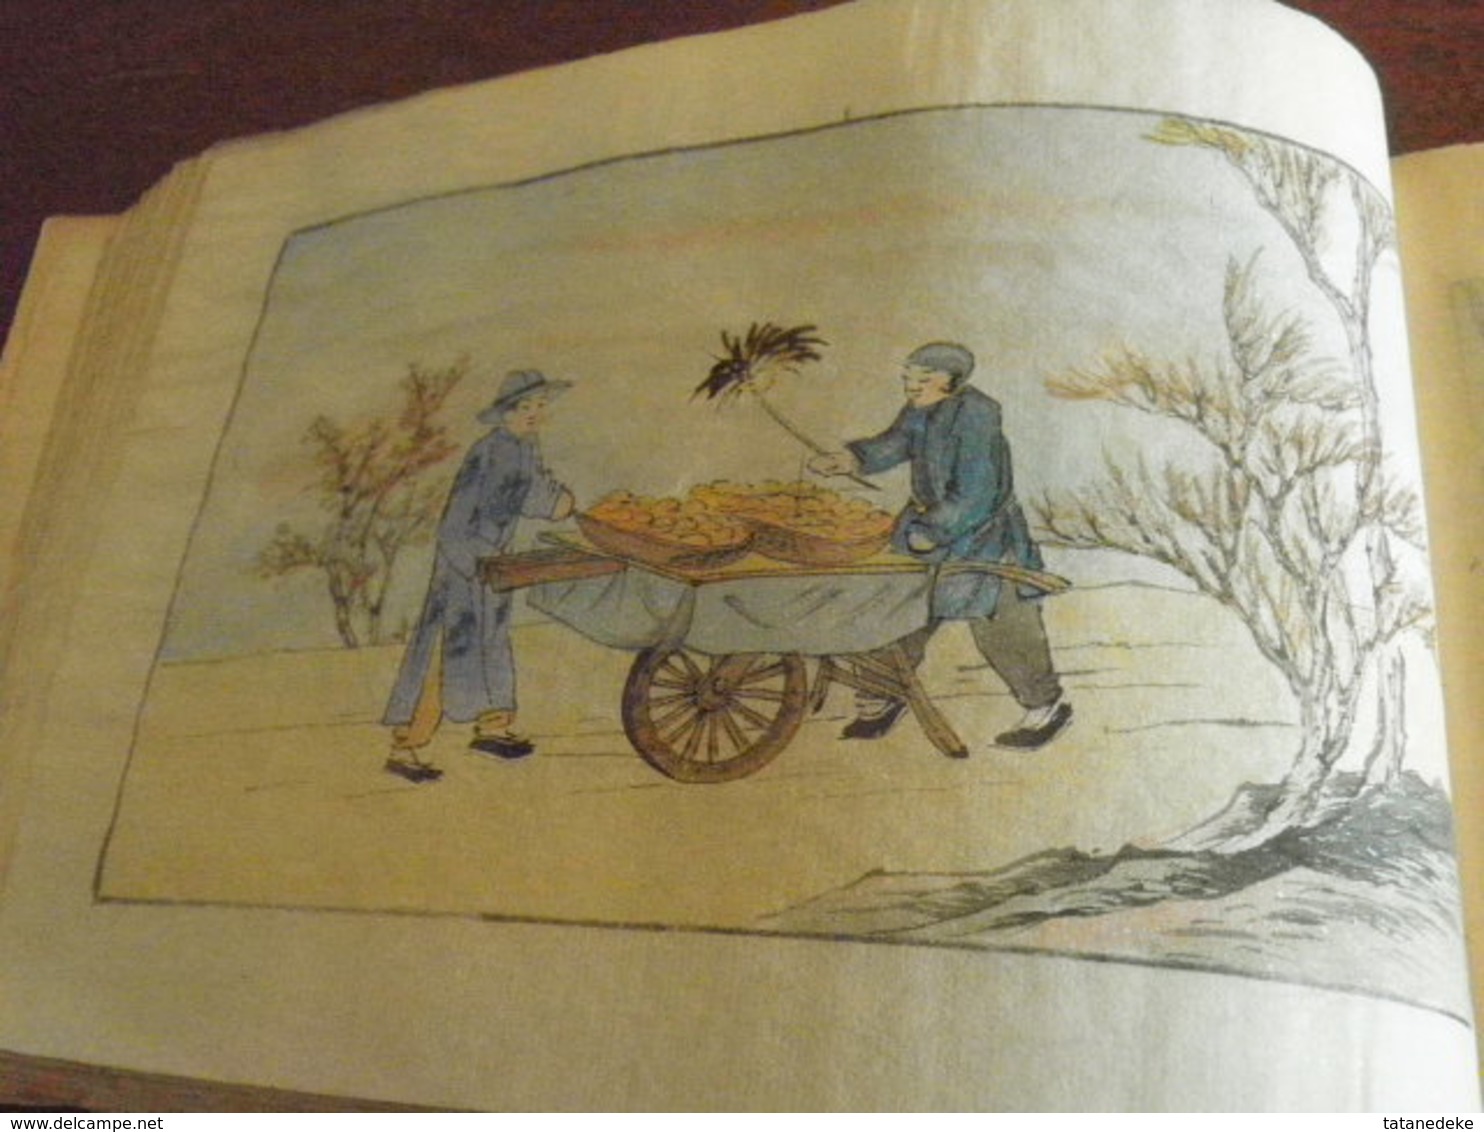 CHINE - CHINA - Ancien recueil de 12 aquarelles de métiers chinois anciens - années 1930...